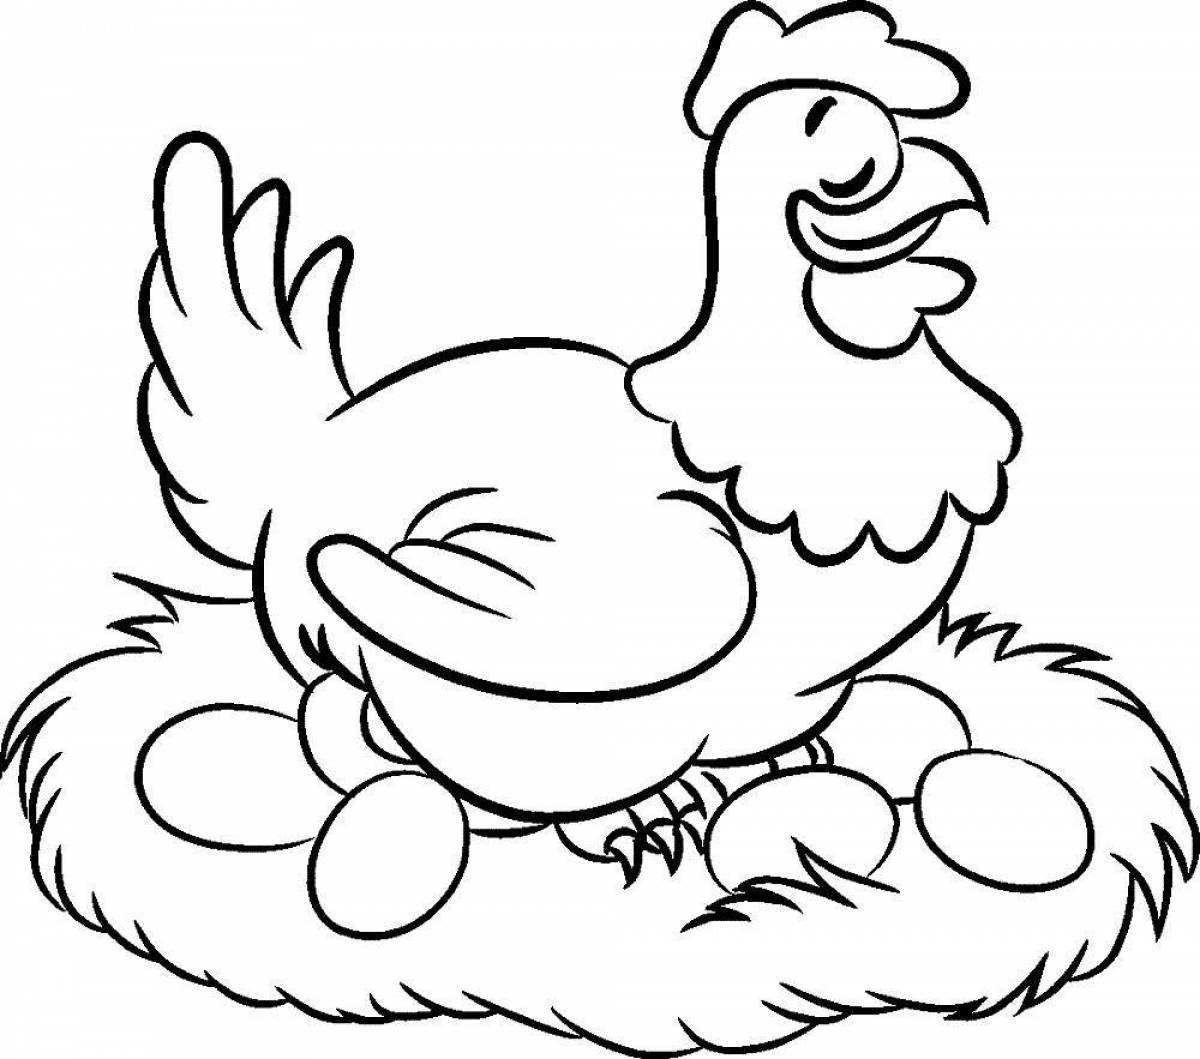 Яркая раскраска цыпленка для детей